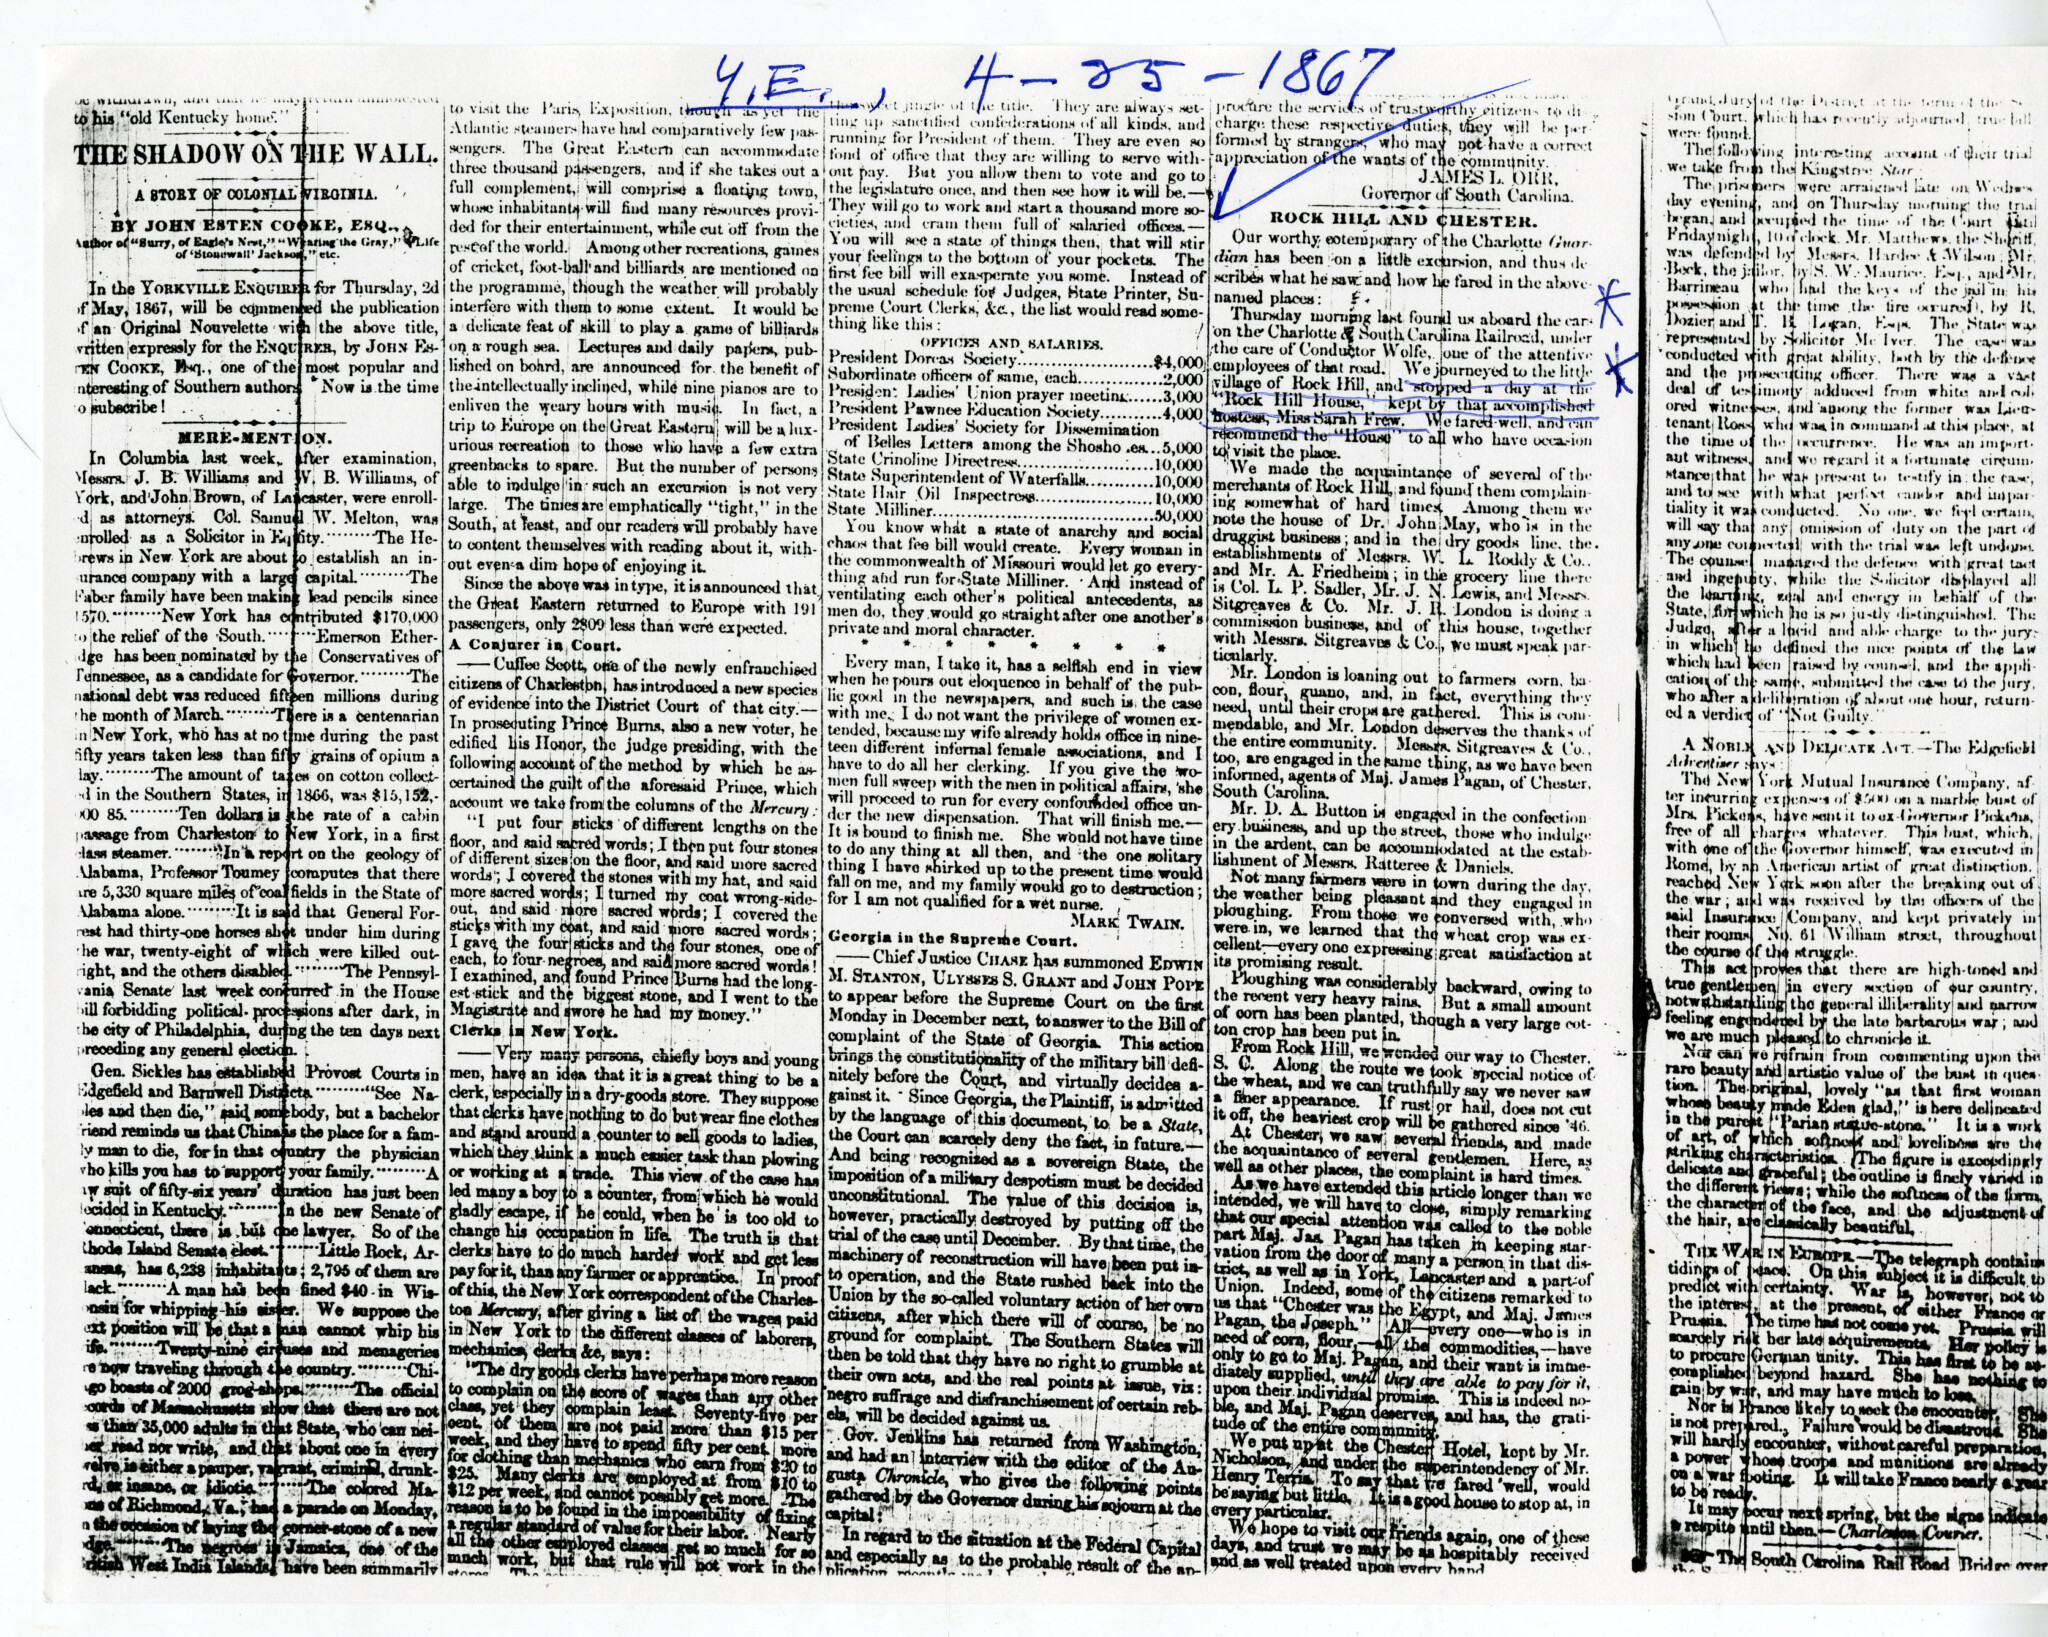 ROCK HILL IN 1867 - WU PETTUS ARCHIVES NEWSPAPER REPORT